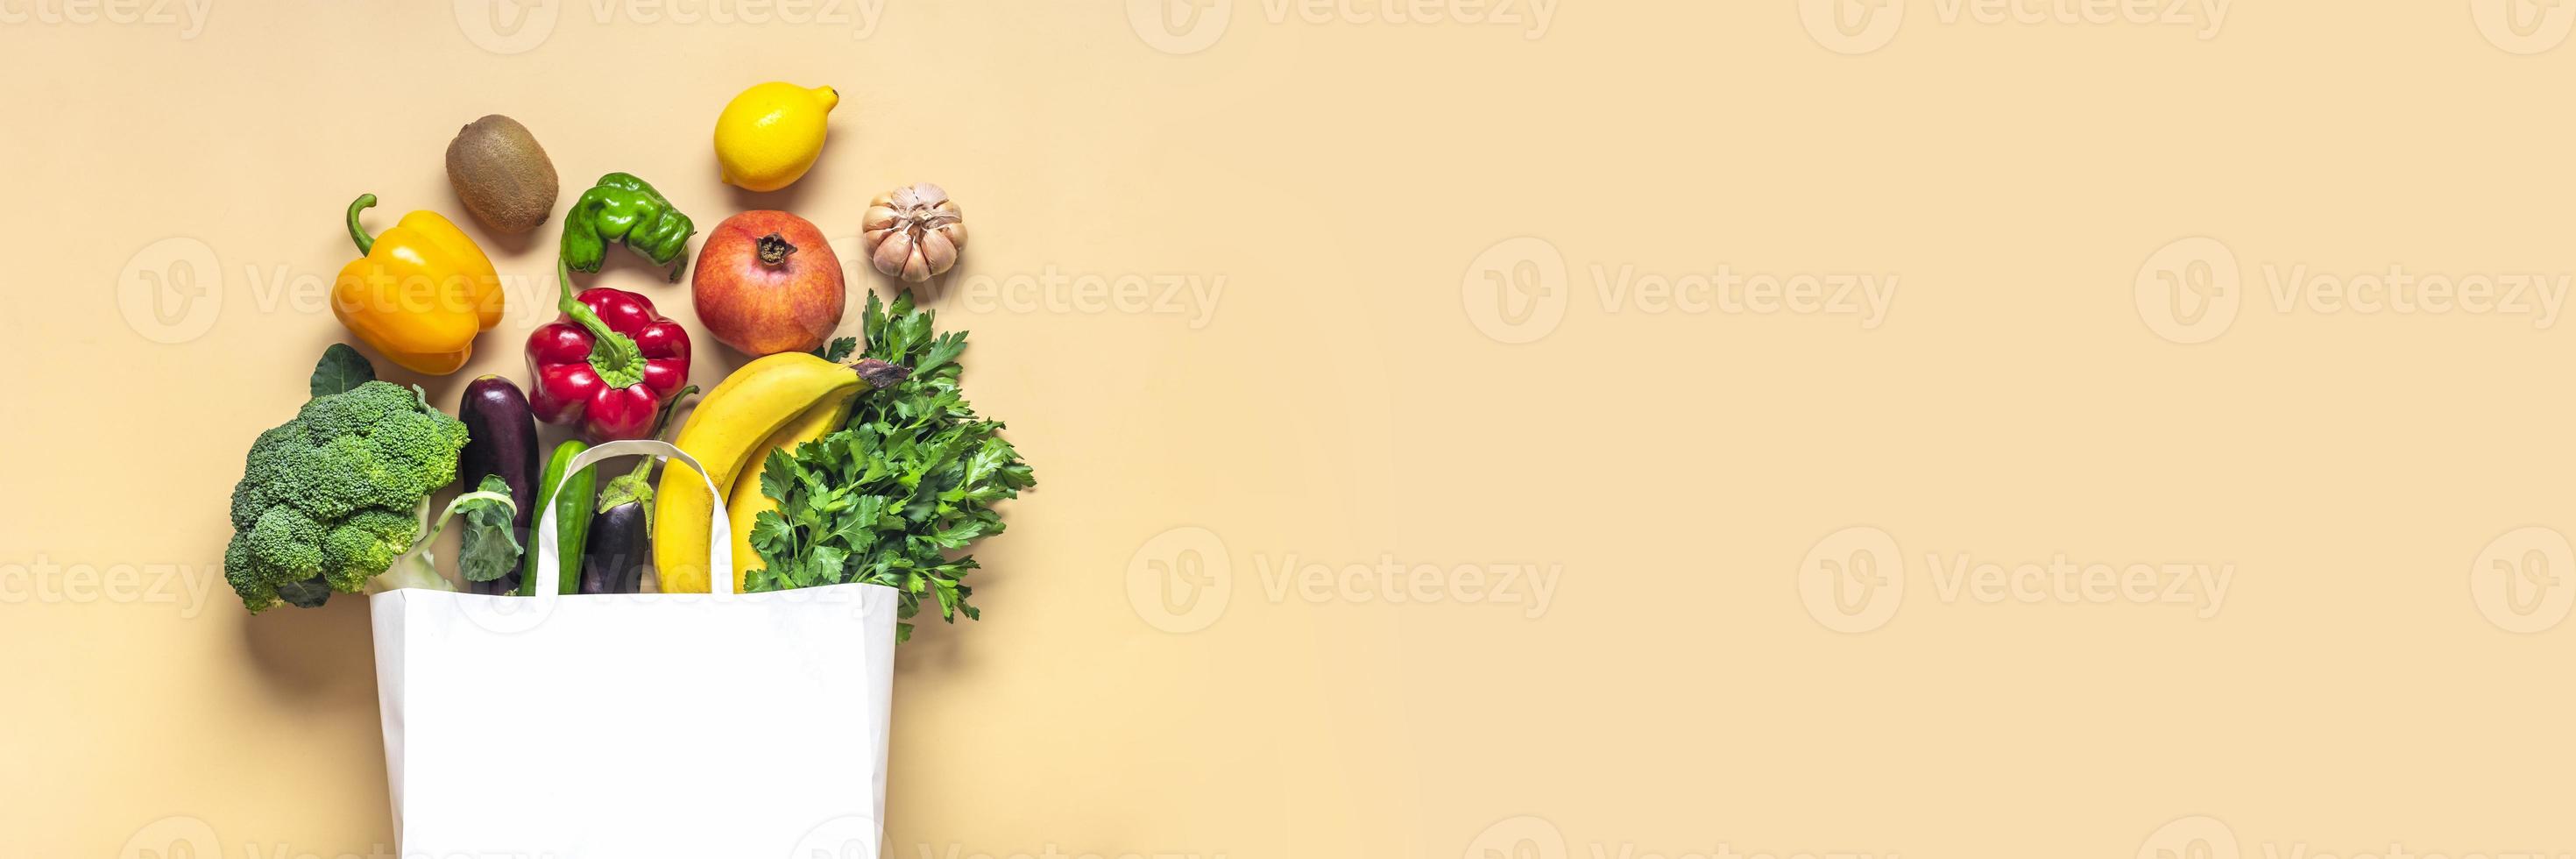 sac de magasin en papier respectueux de l'environnement avec des légumes verts biologiques crus isolés sur fond beige à plat, vue de dessus zéro déchet, concept sans plastique alimentation saine et désintoxication, concept d'agriculture photo